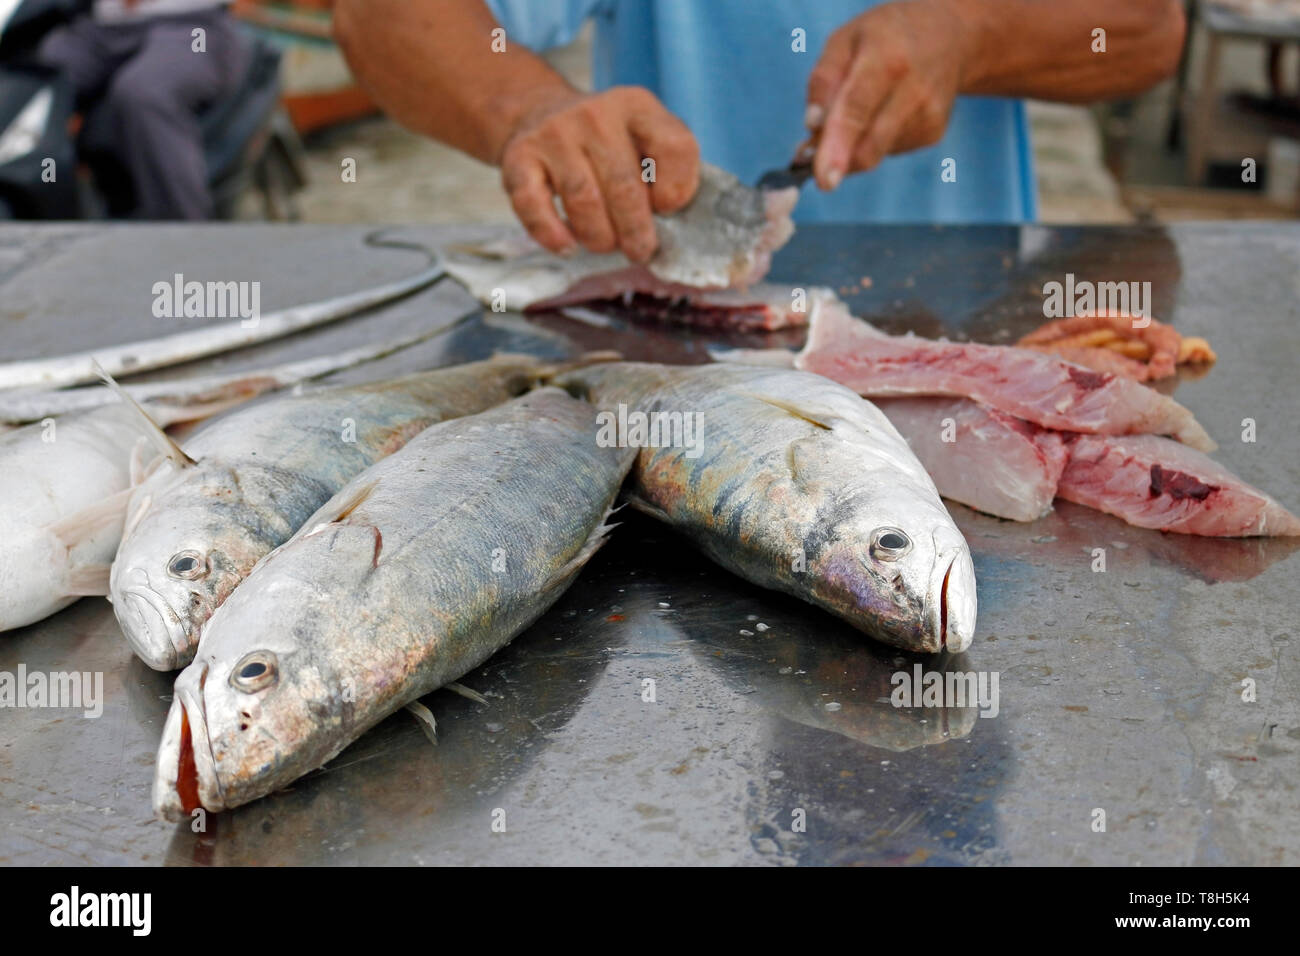 Il pescatore pulisce il pesce fresco che ha appena catturato in mare. I vostri clienti sono in attesa. Ha abilmente utilizza un coltello affilato. Foto Stock